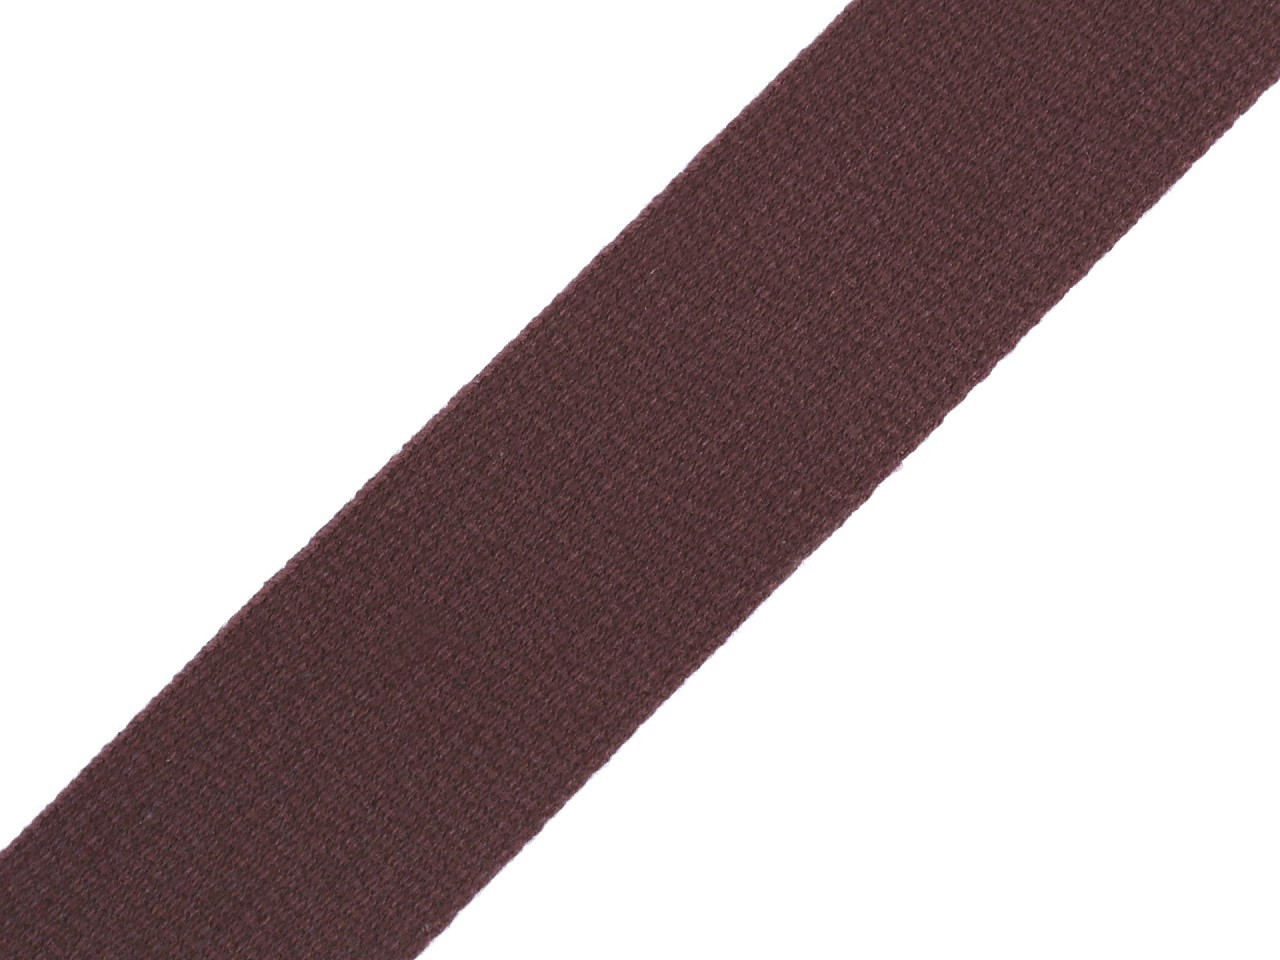 Bavlněný popruh šíře 30 mm, barva 7930 hnědá čokoládová